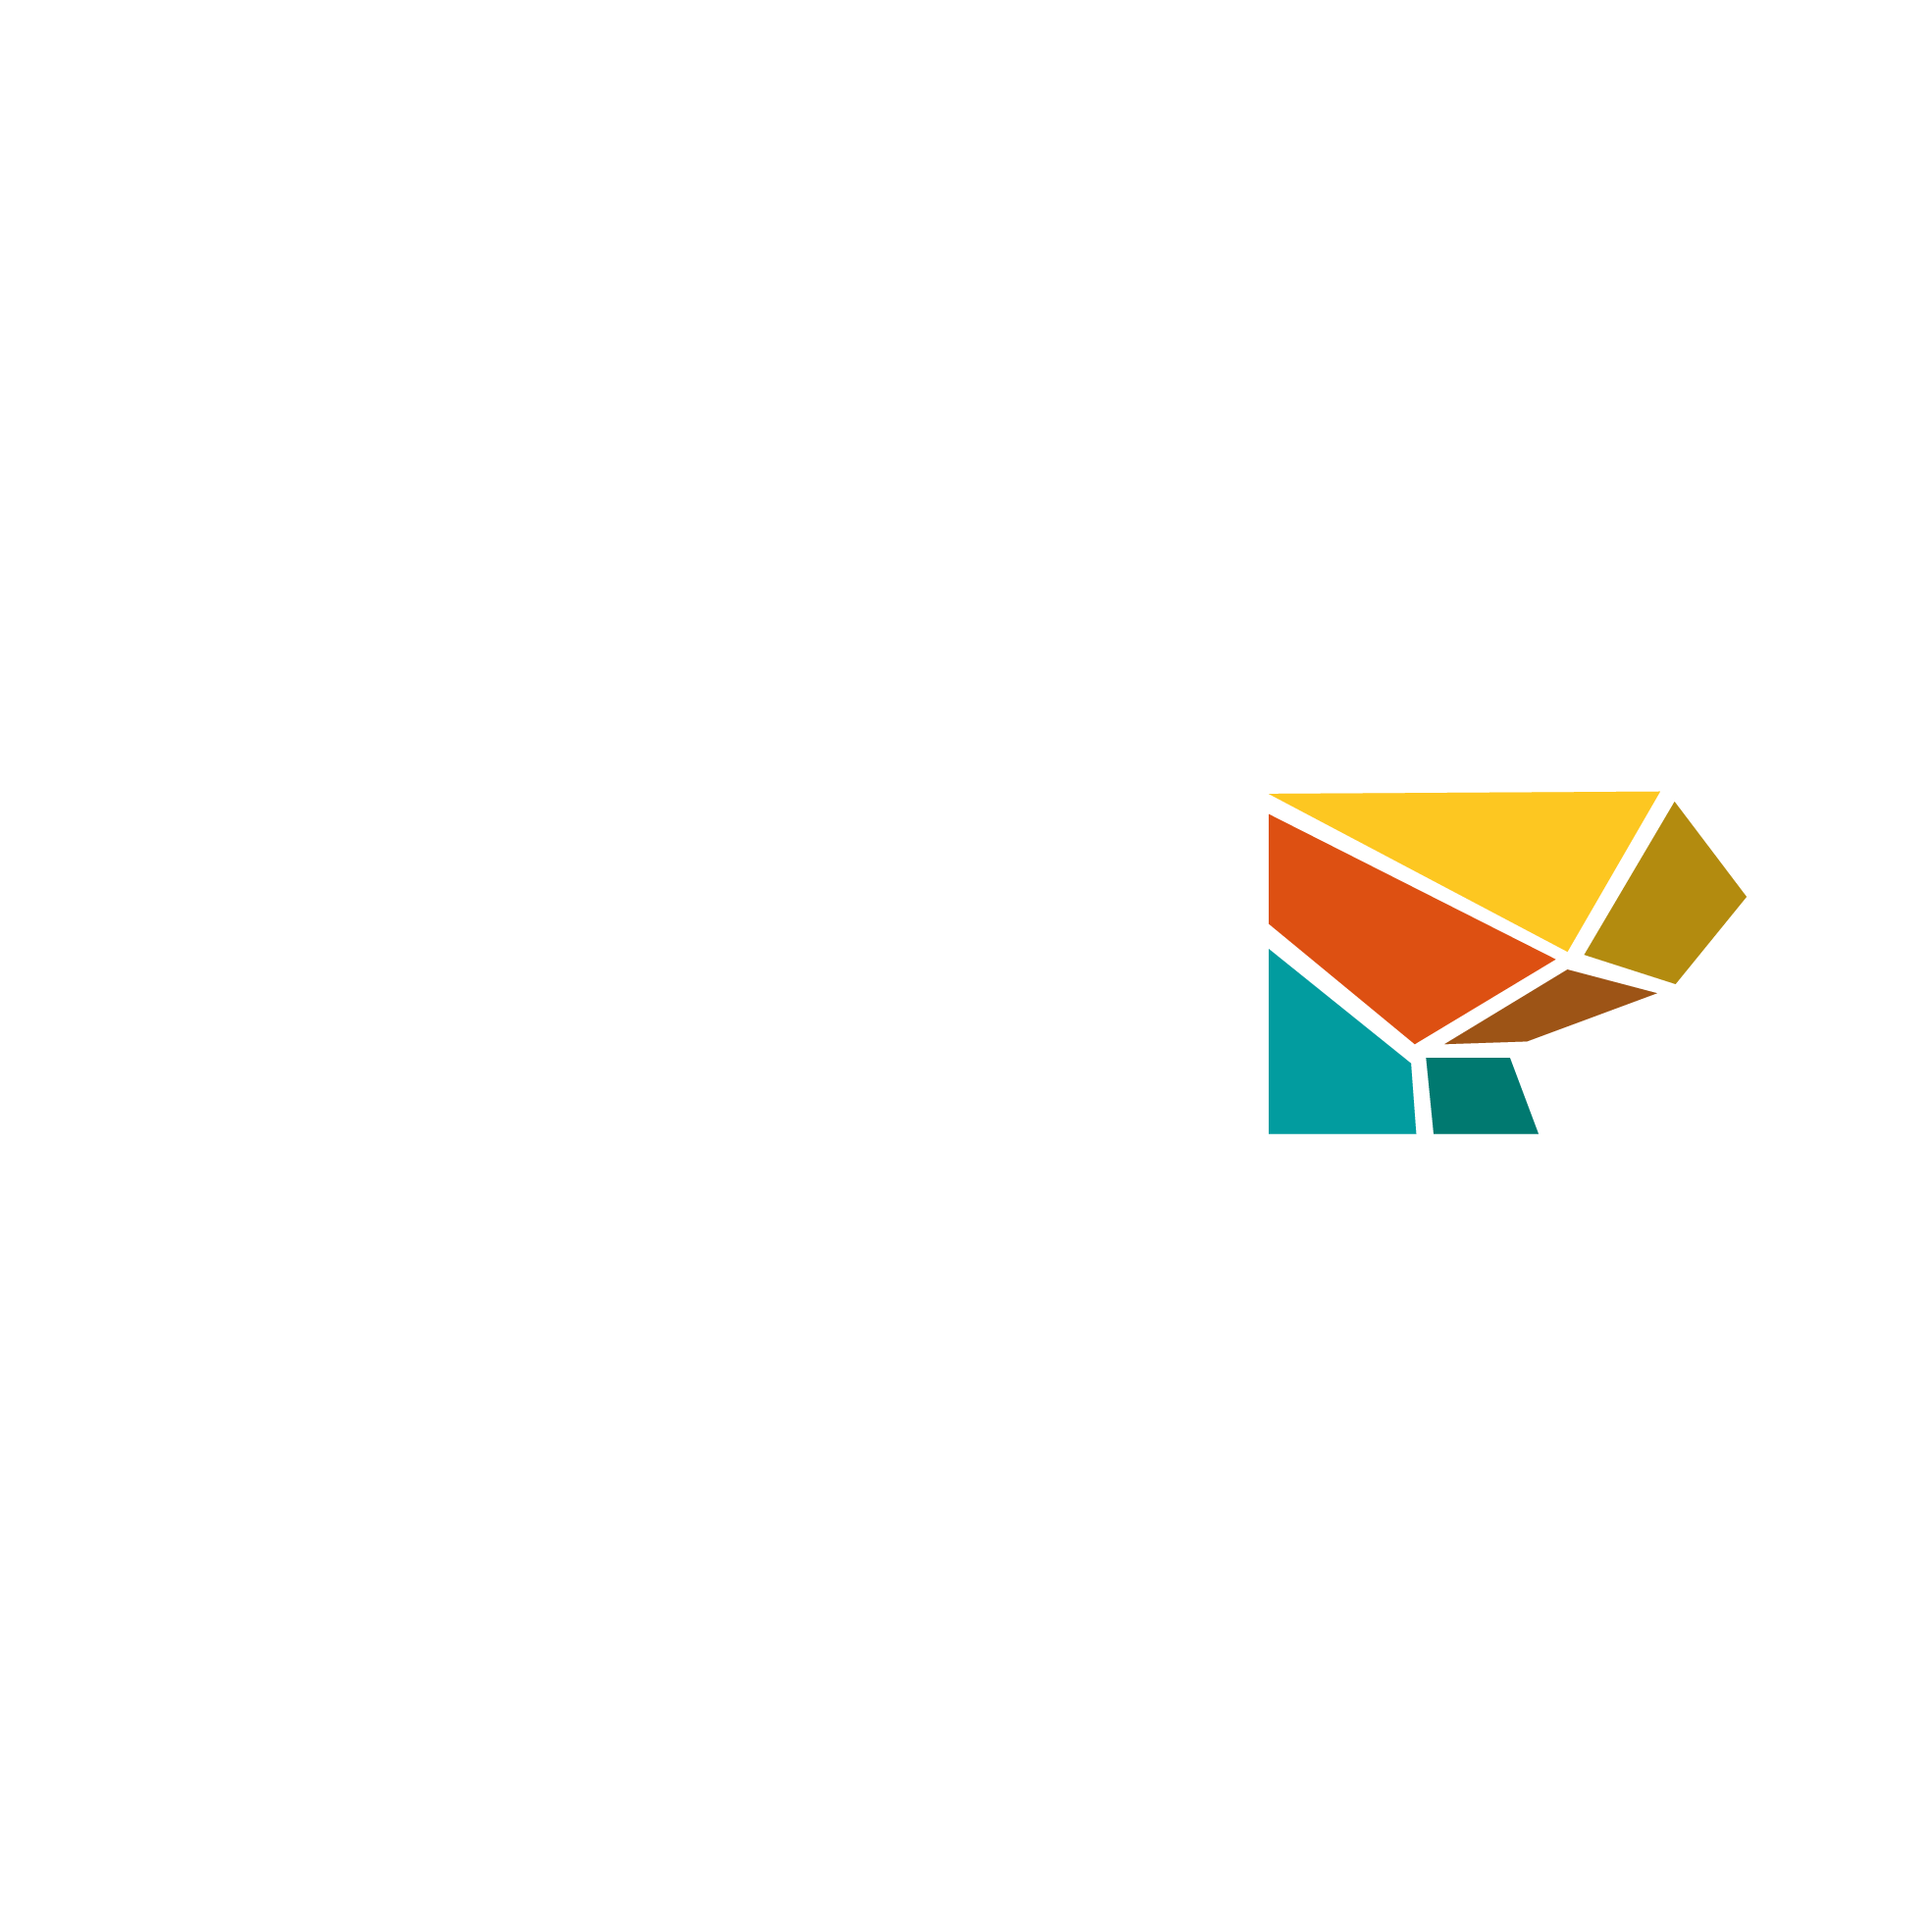 FLOW boulder